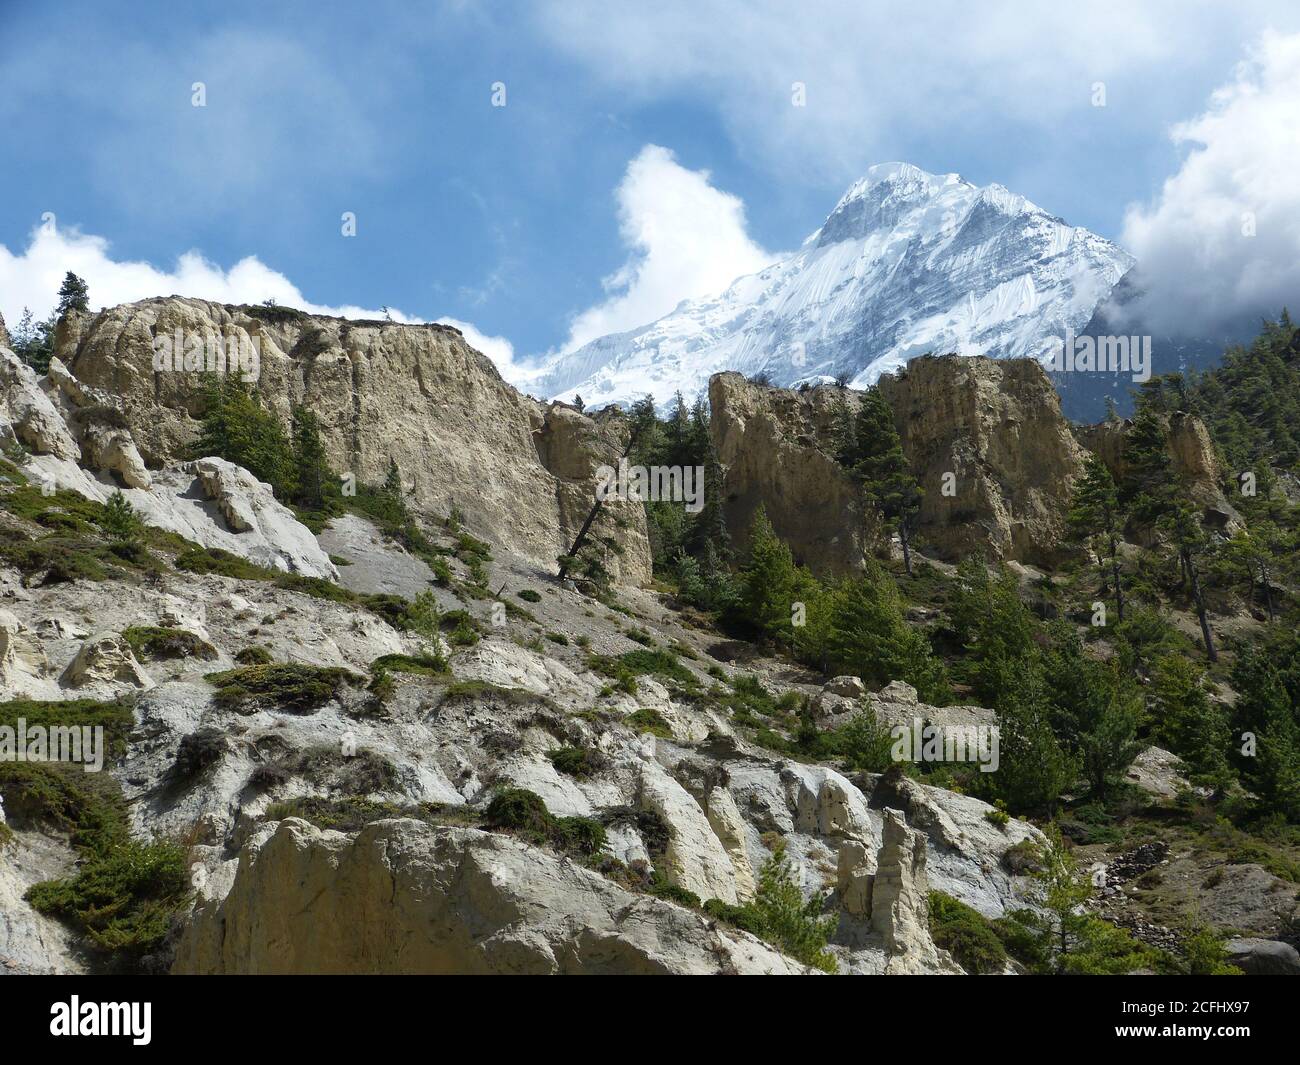 Mystérieuse nature tibétaine à Mustang, au Népal. Vue incroyable sur les rochers blancs et les conifères verts. Montagne enneigée Nilgiri. Magnifique montagne himalayenne Banque D'Images